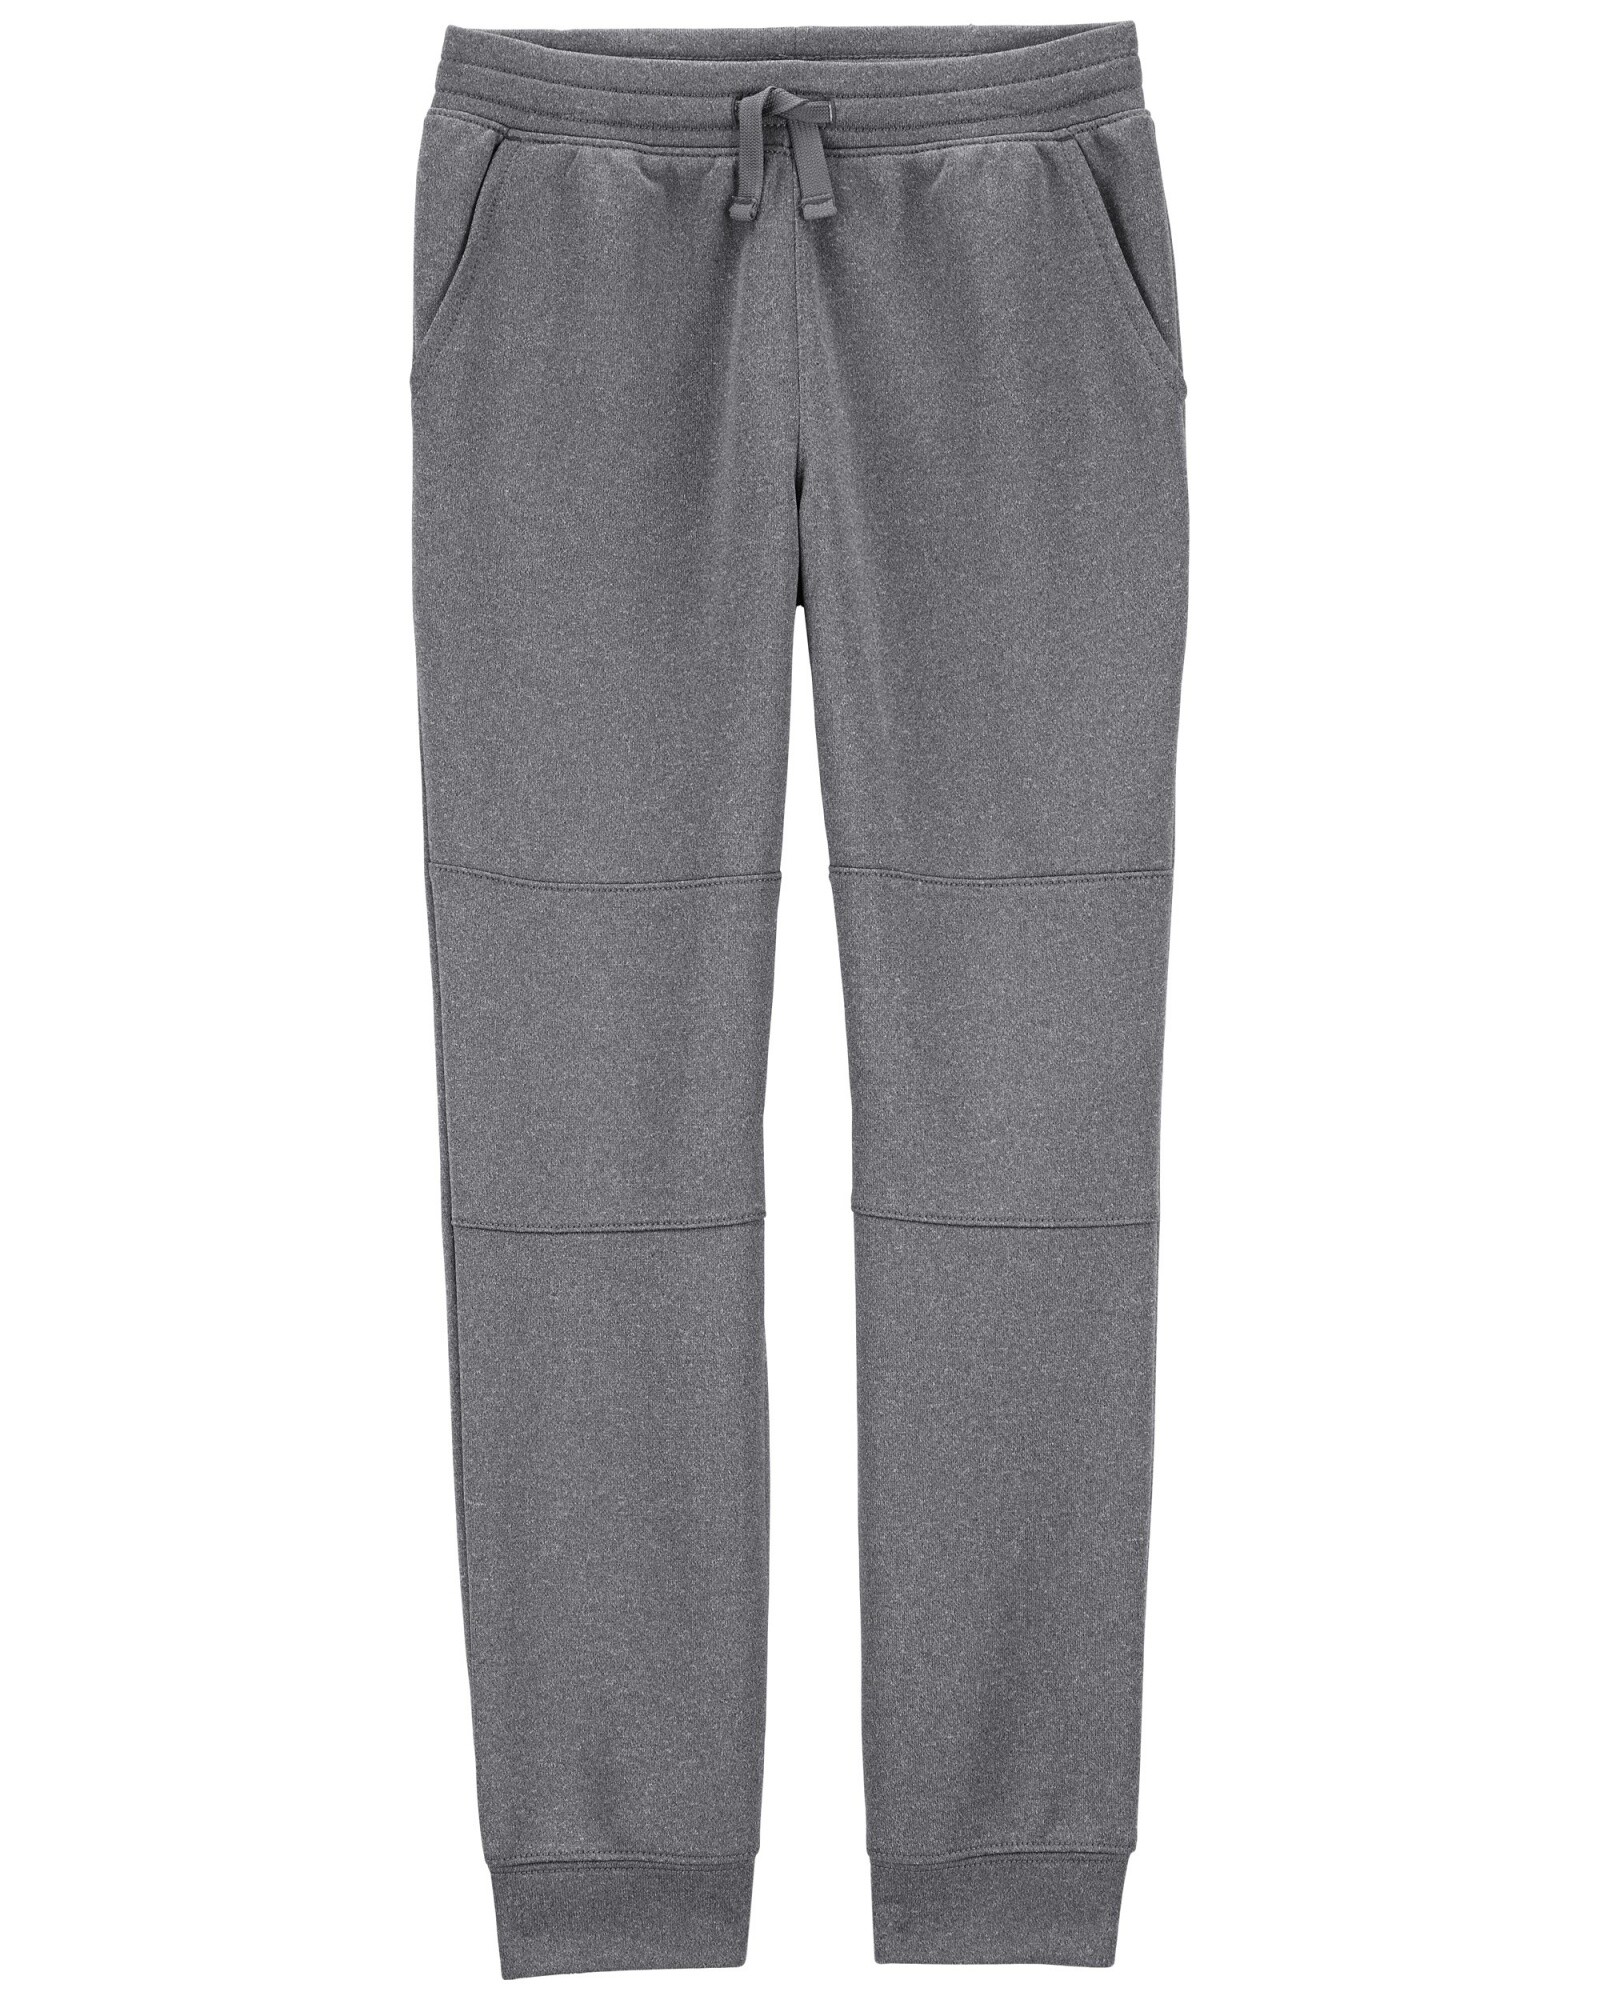 Pantalón deportivo de poliéster, gris. Talles 6-8 Sin color